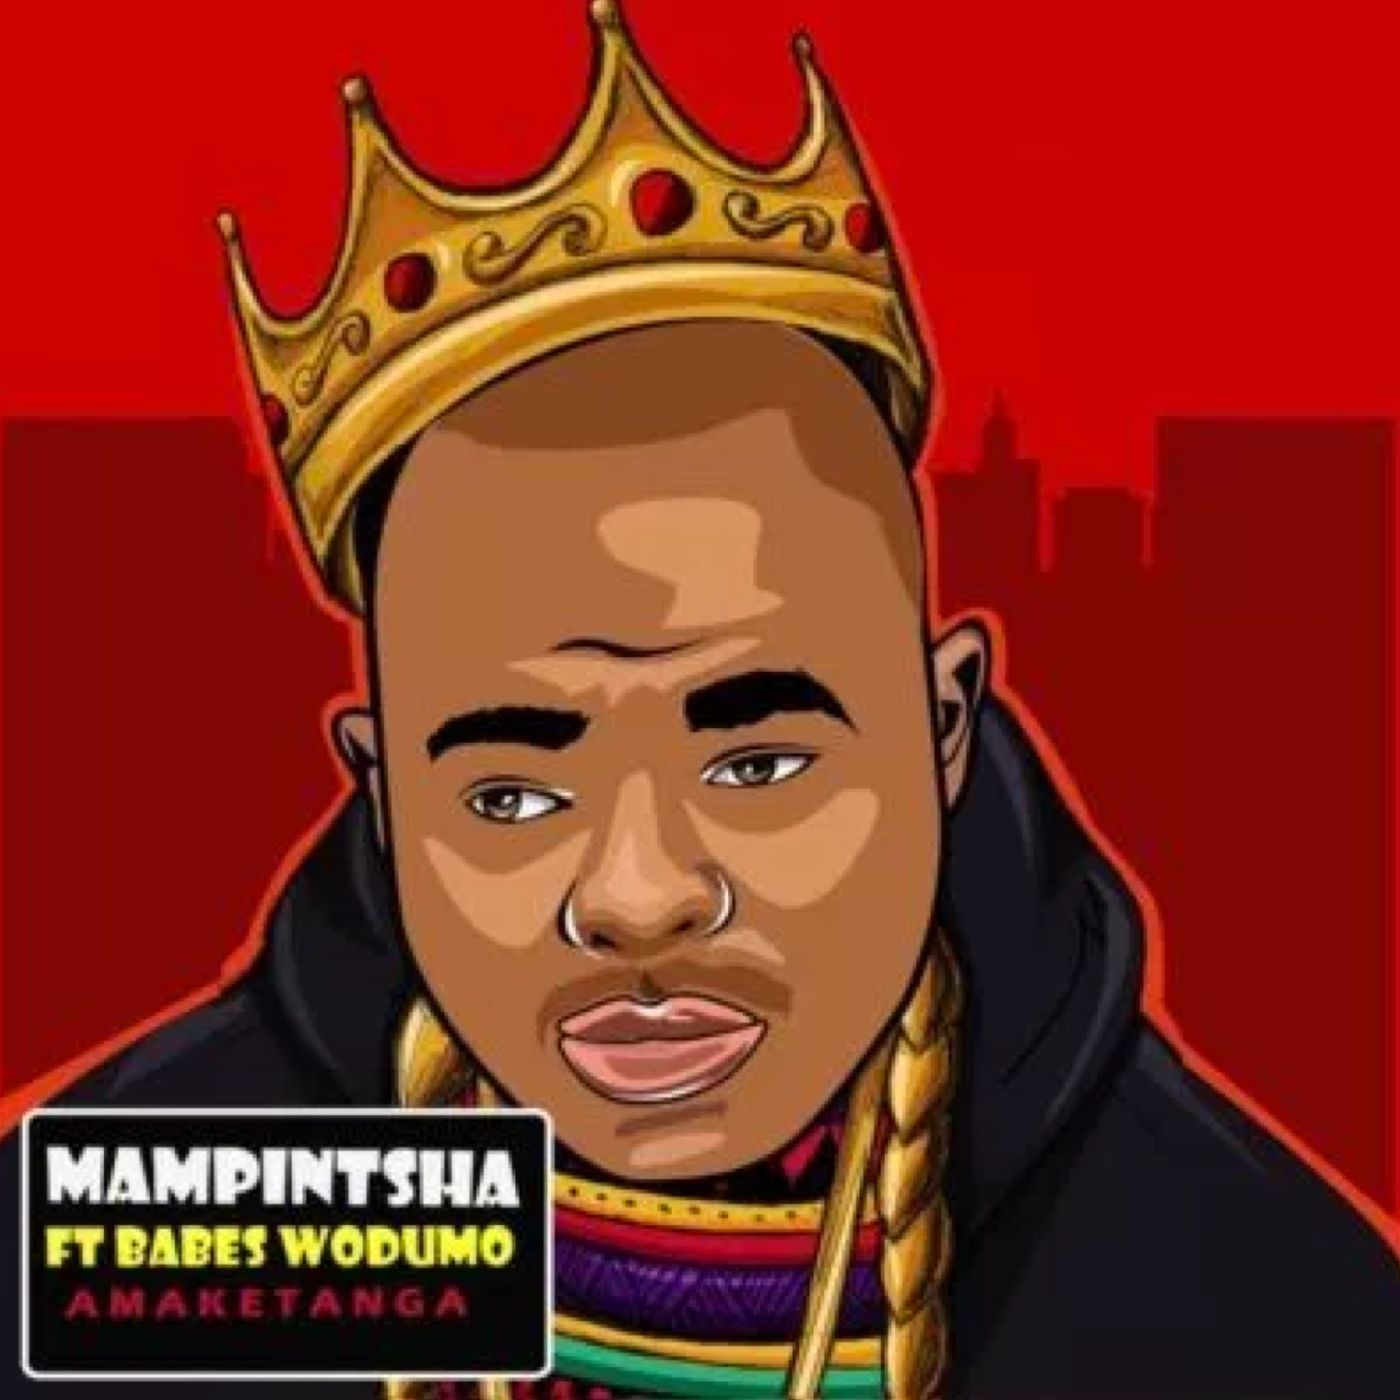 Mampintsha ft Babes Wodumo - Amaketanga / Shot Out